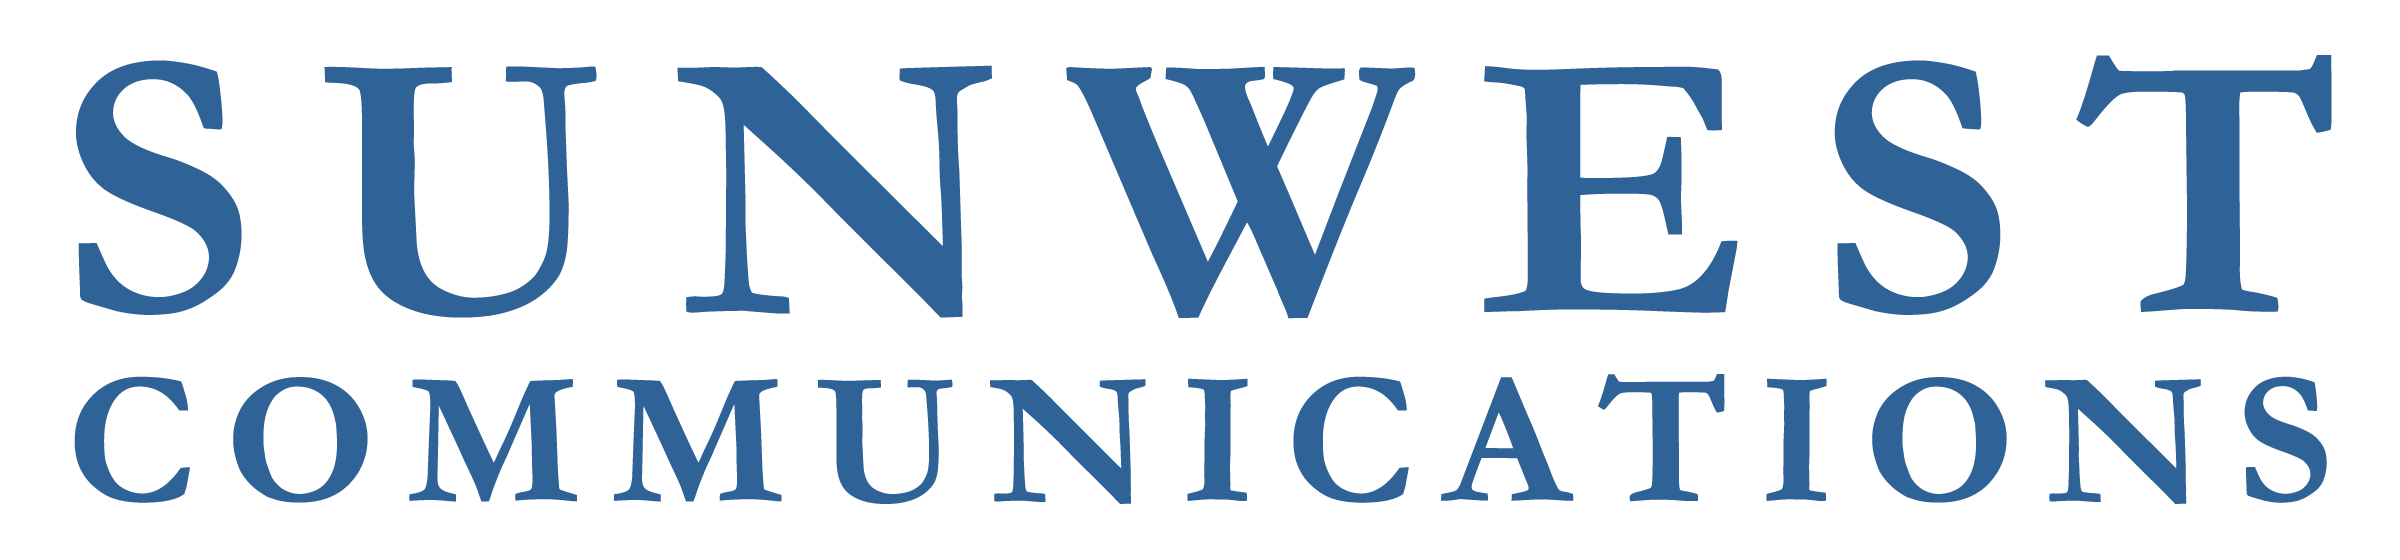 Sunwest Communications